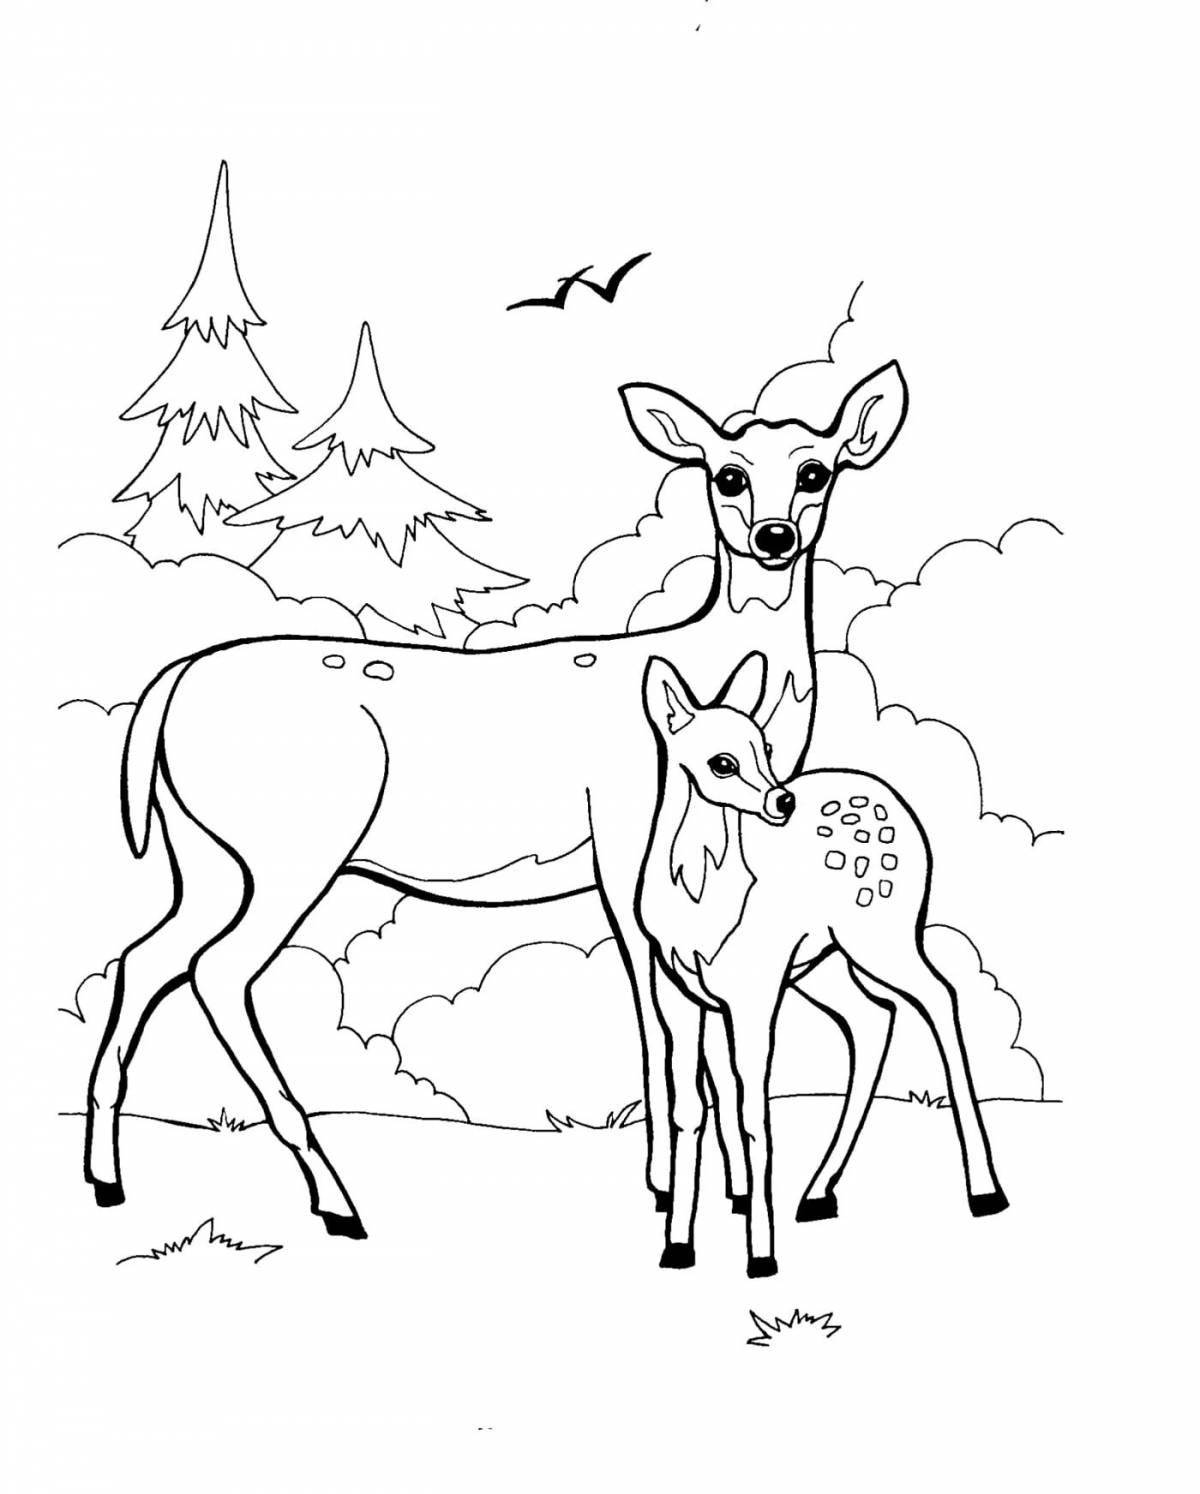 Glowing roe deer coloring book for kids